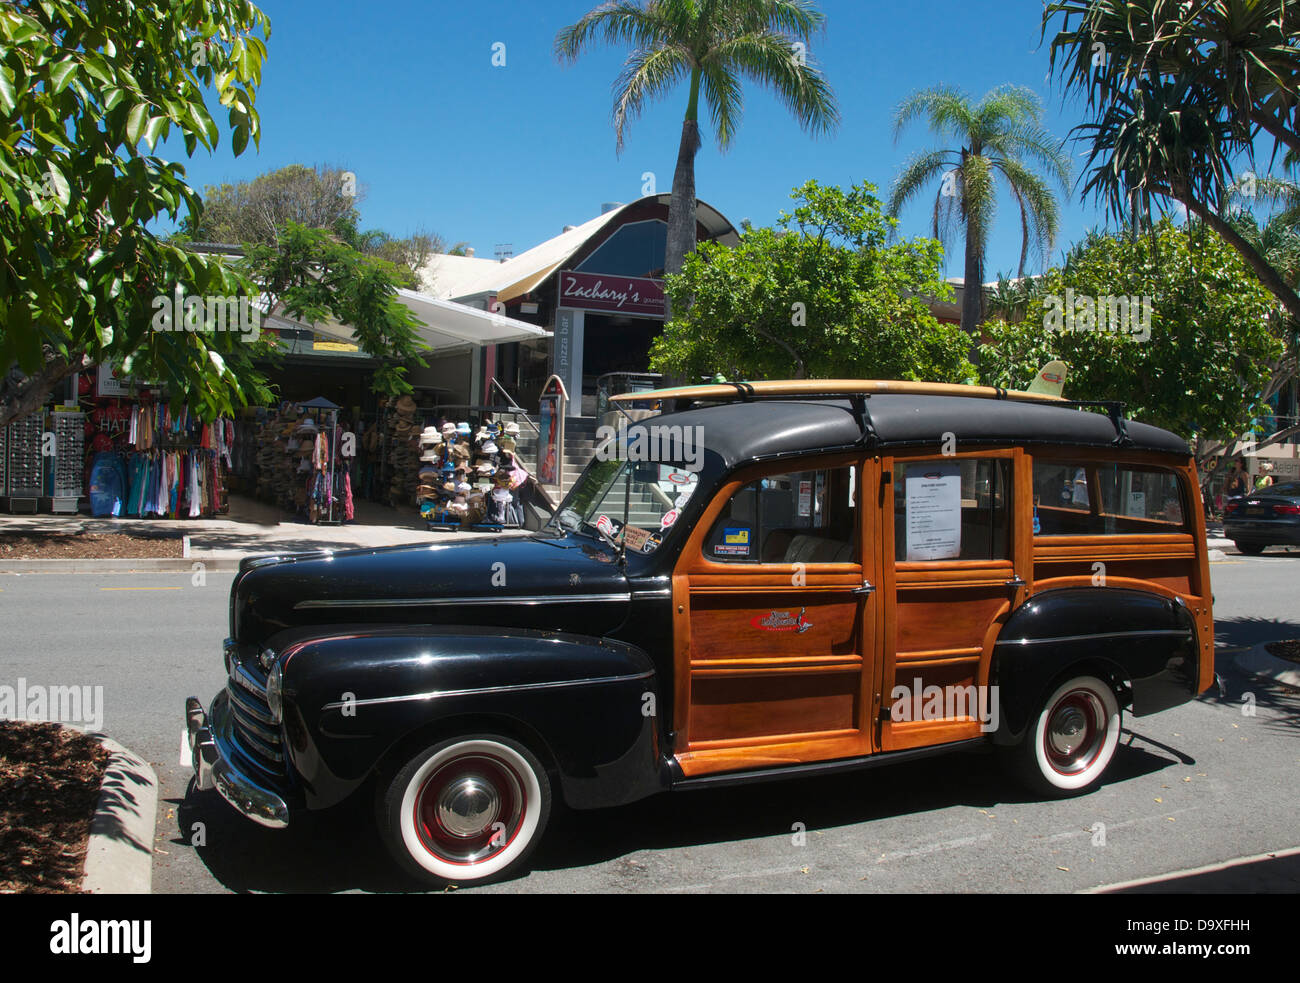 Unbefleckten restauriert 1946 Ford Woody Noosa Sunshine Coast Queensland Australien Stockfoto